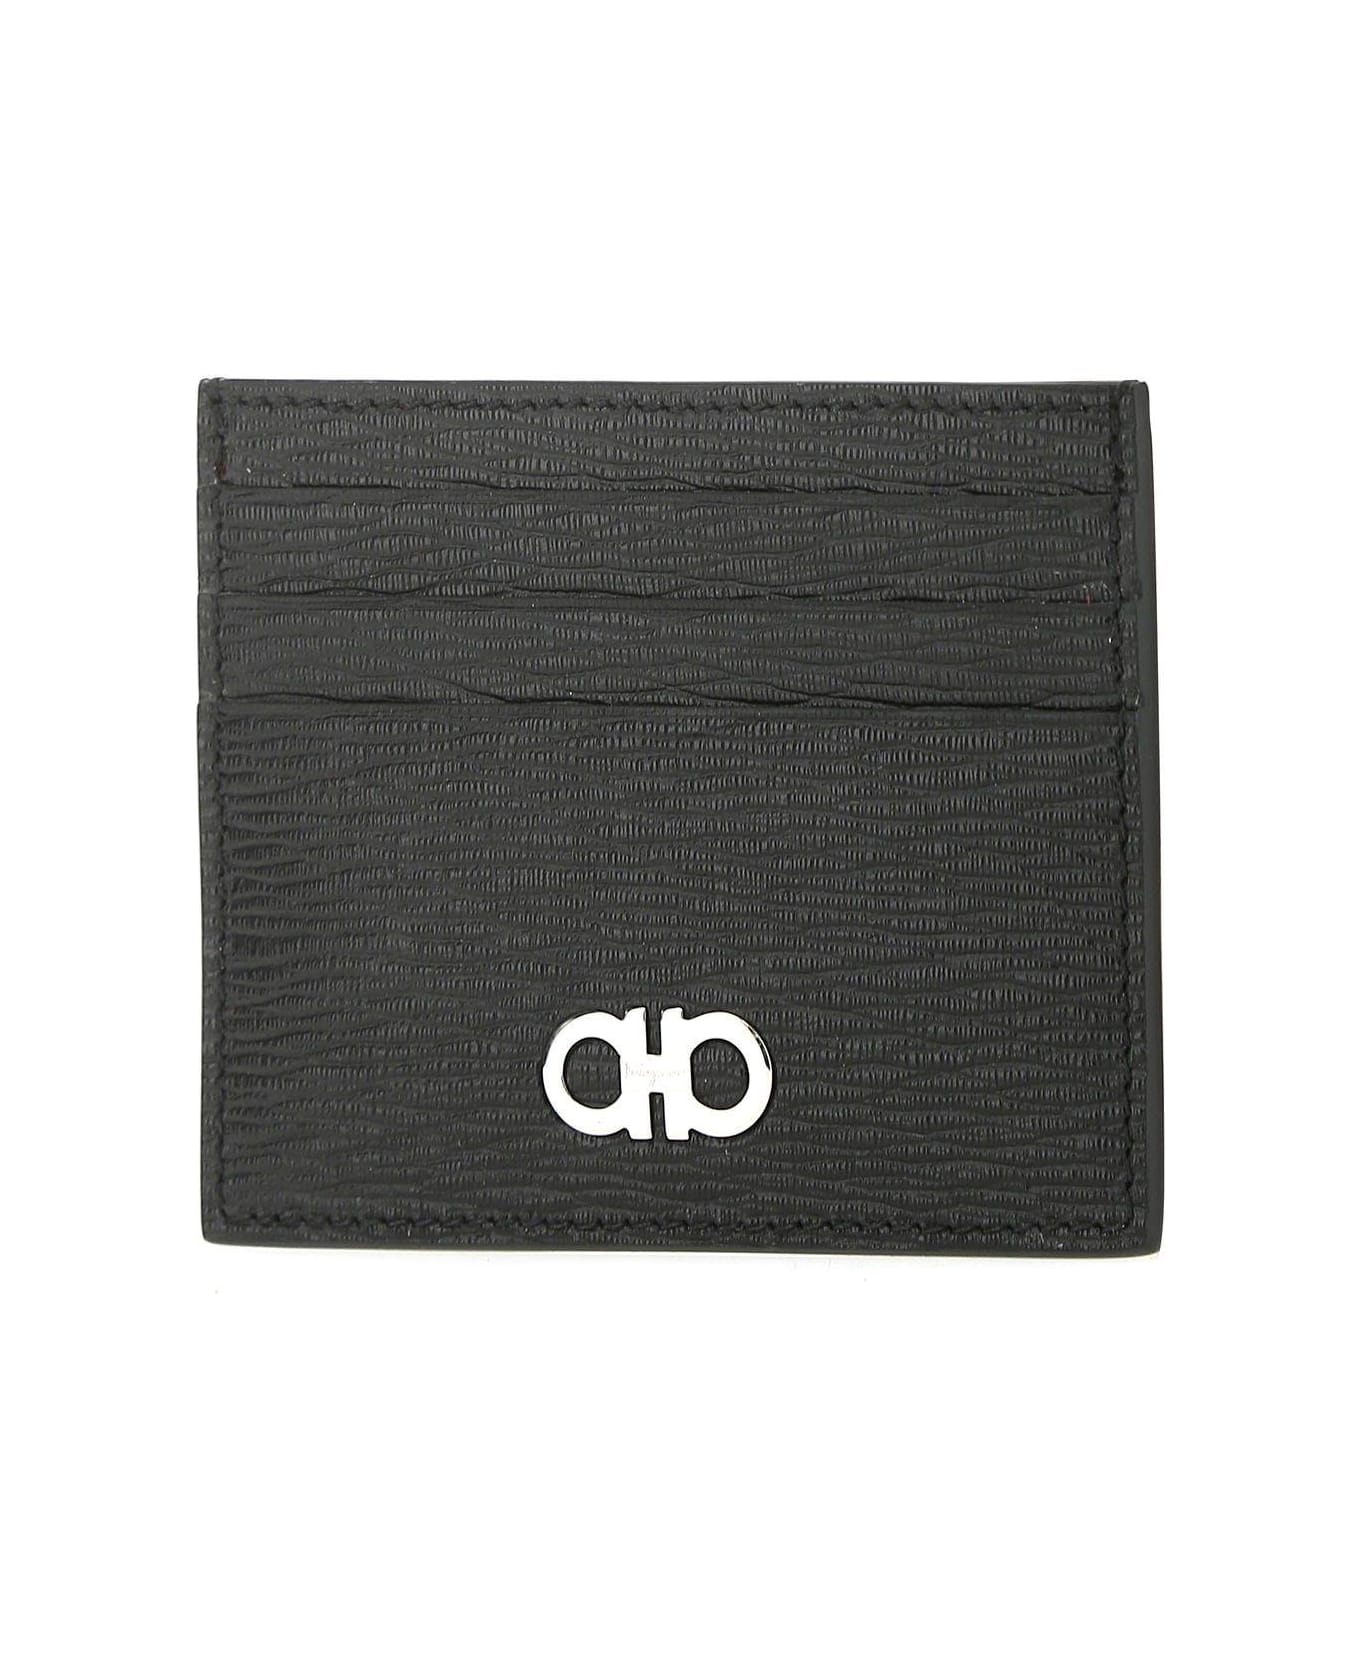 Ferragamo Two-tone Leather Card Holder - Nero/red 財布